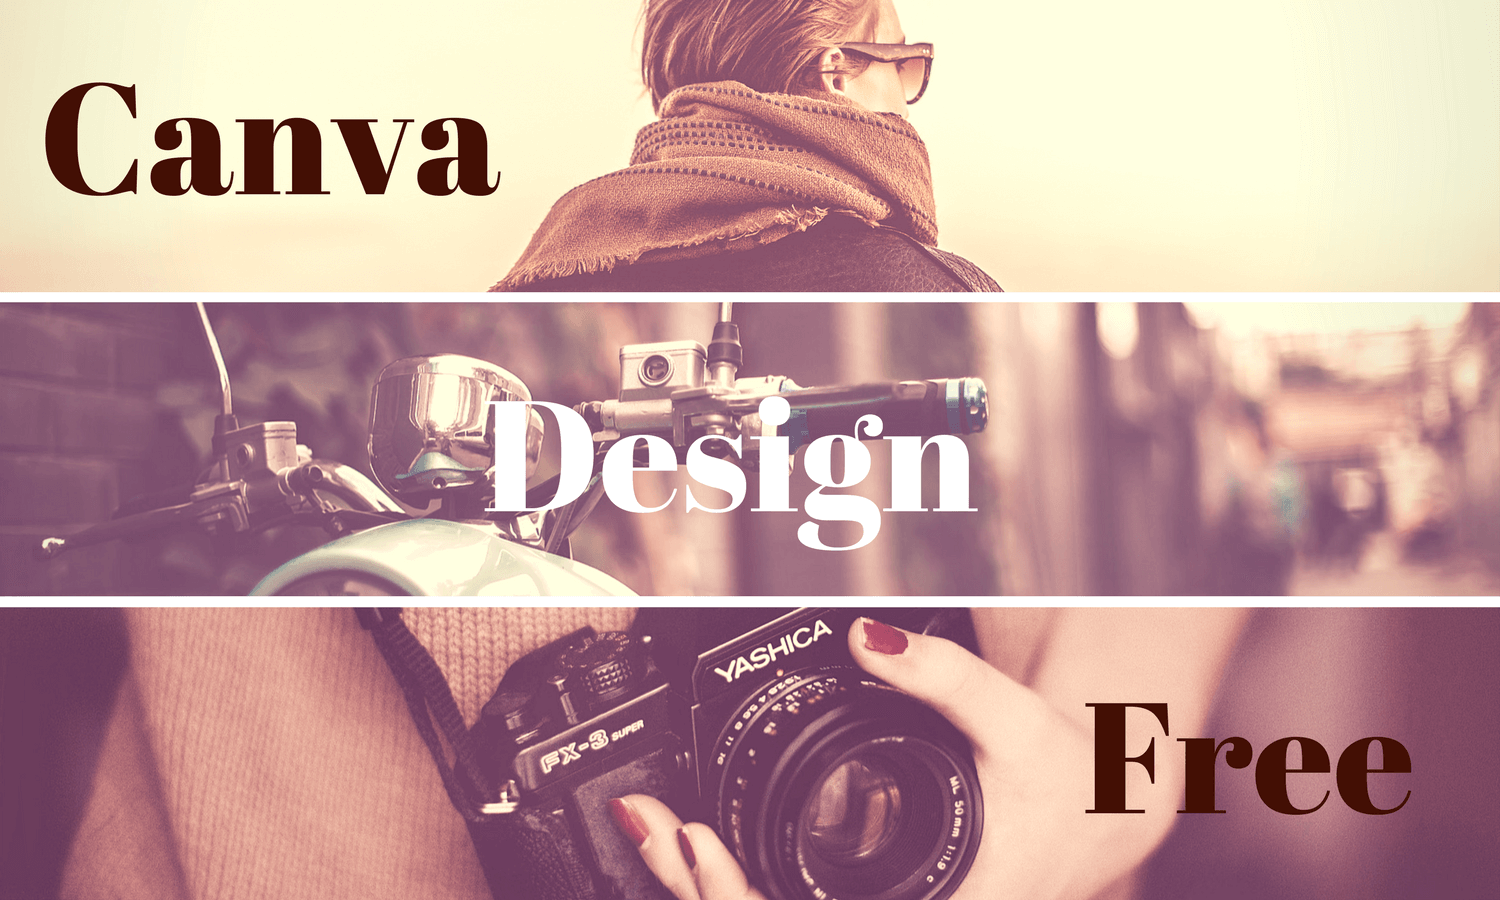 噂の高機能無料デザインツール「Canva」でブログのアイキャッチ画像を作ってみた